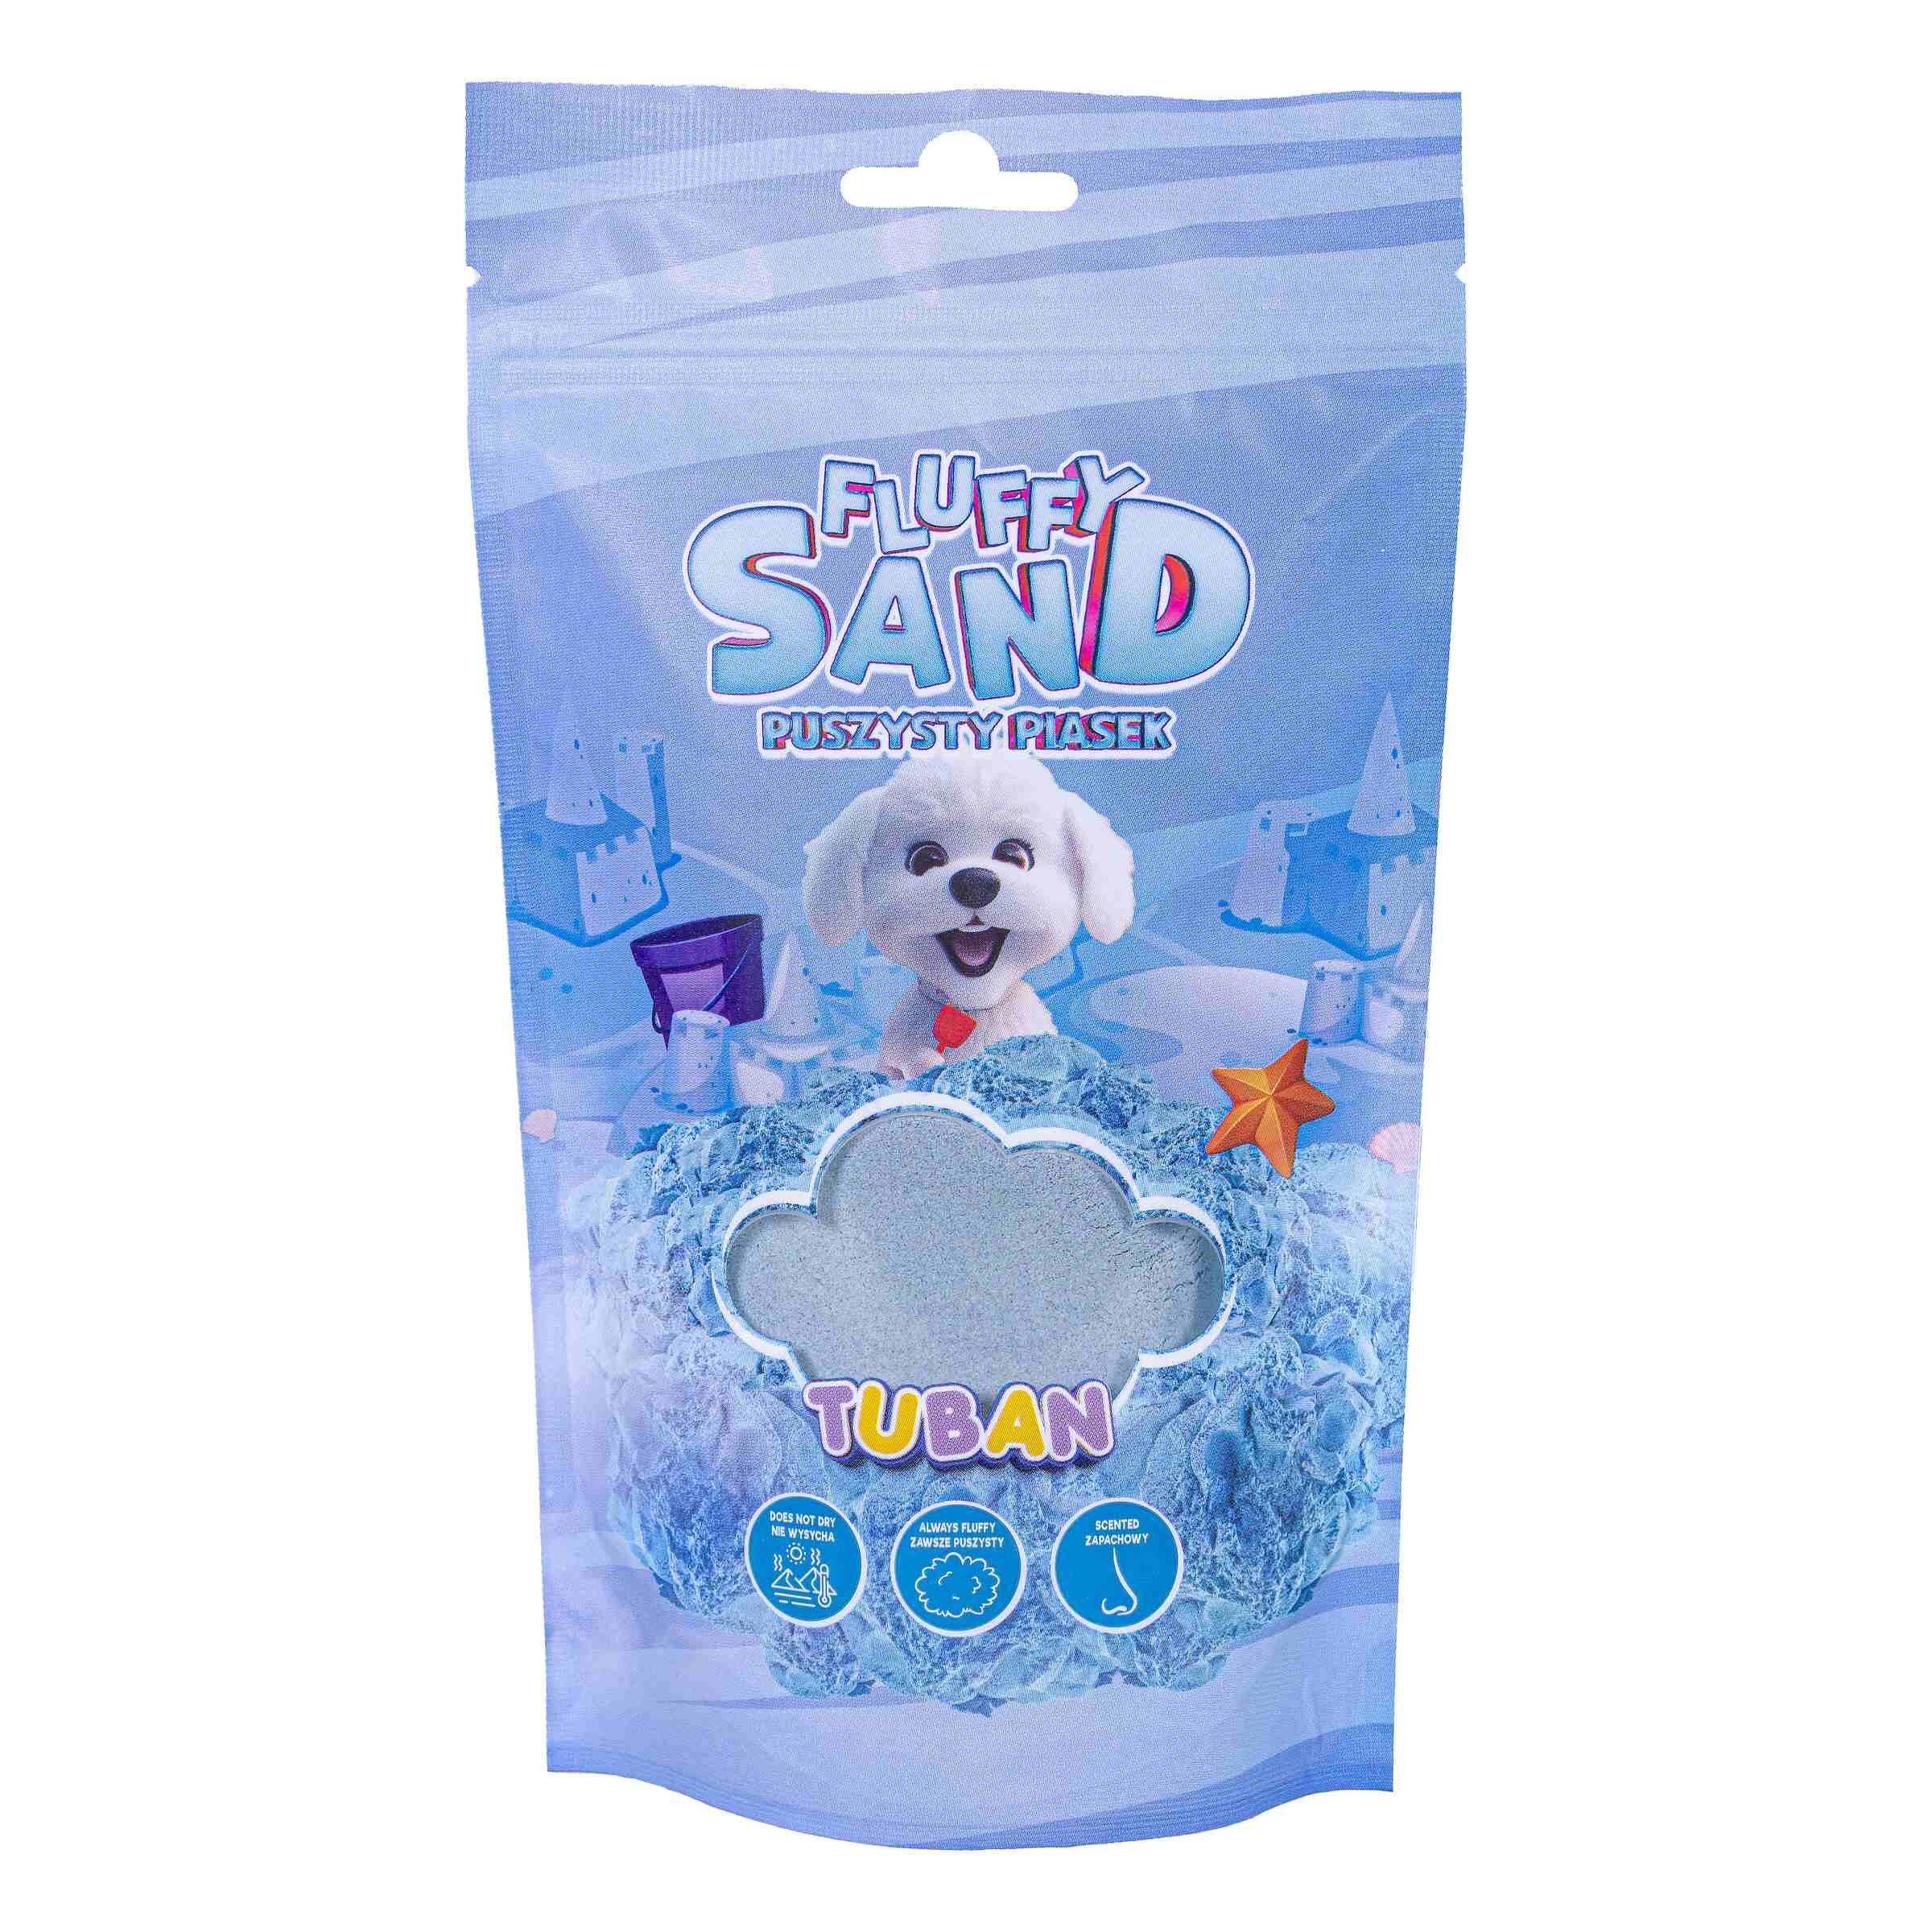 Fluffy Sand puszysty piasek niebieski 90 g